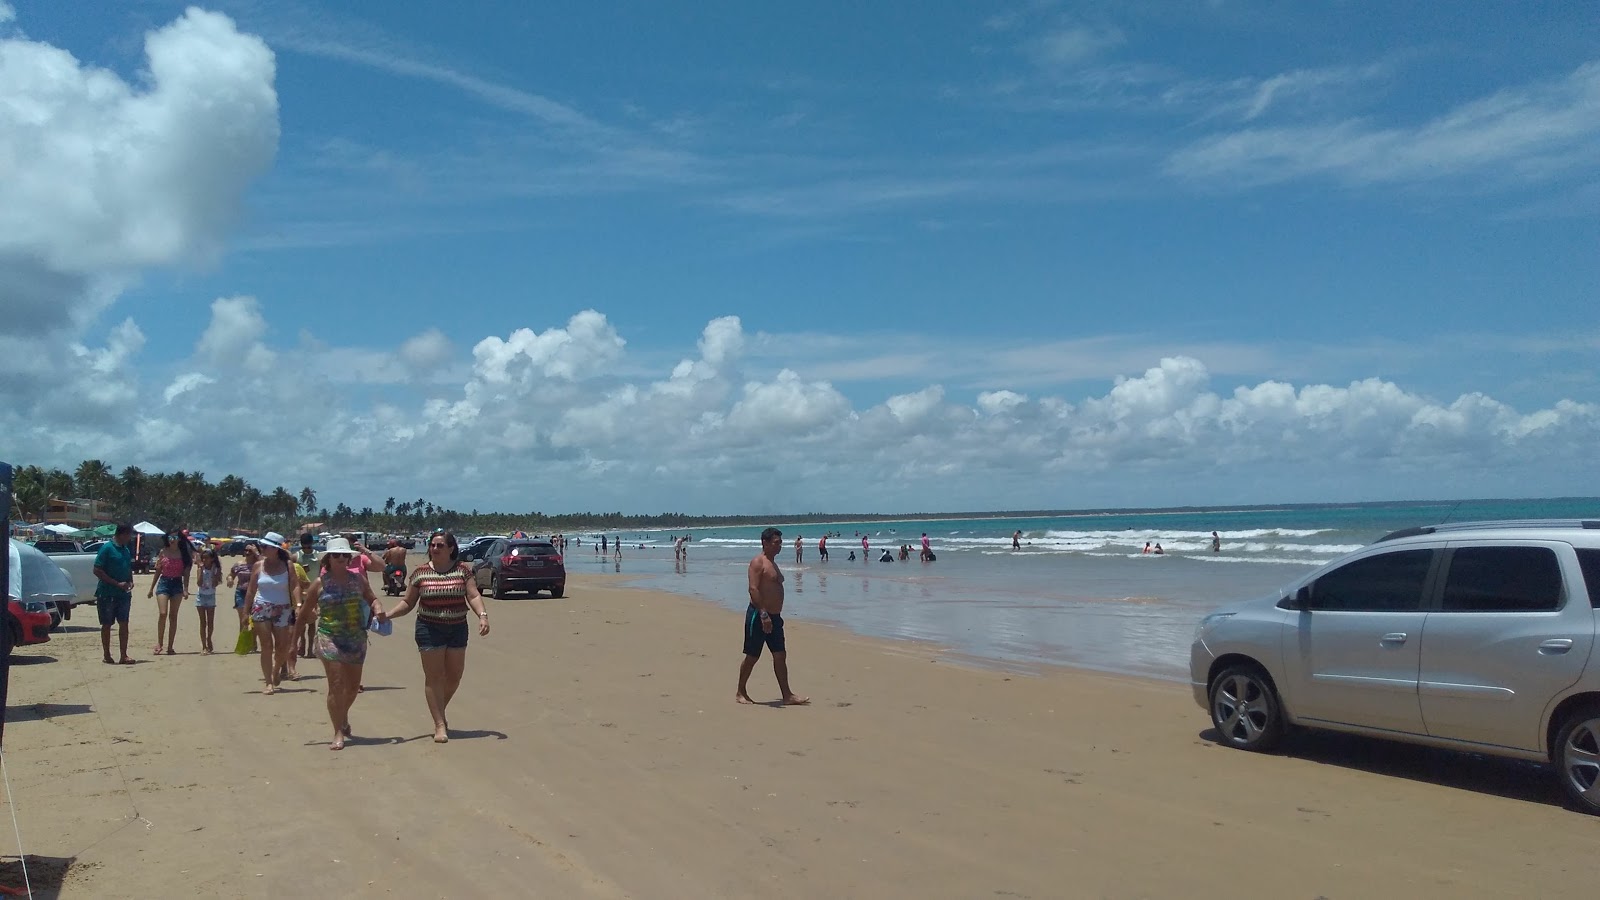 Praia do Peba'in fotoğrafı çok temiz temizlik seviyesi ile